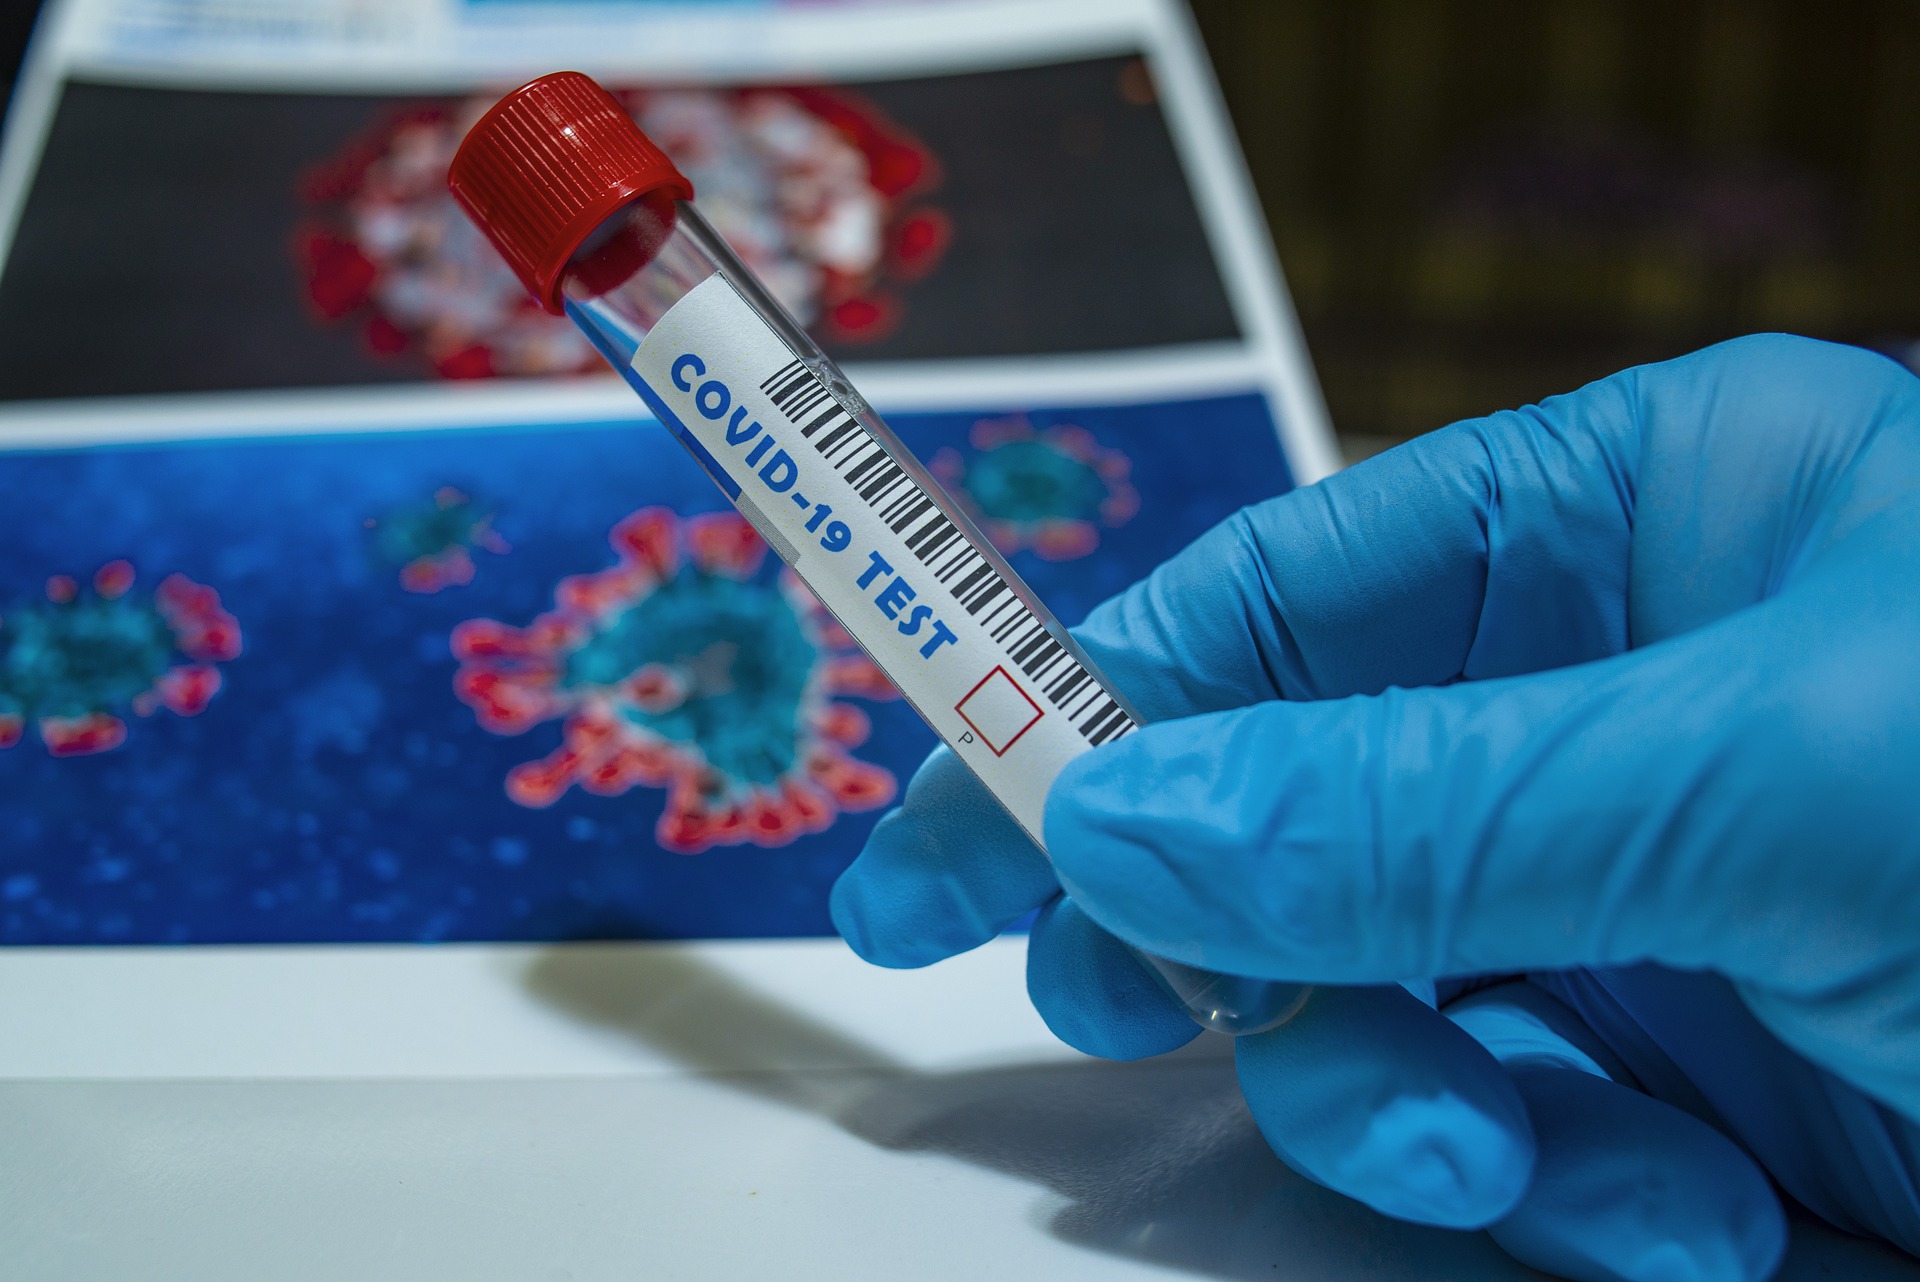 5059 тестов на коронавирус провели в Смоленской области за сутки